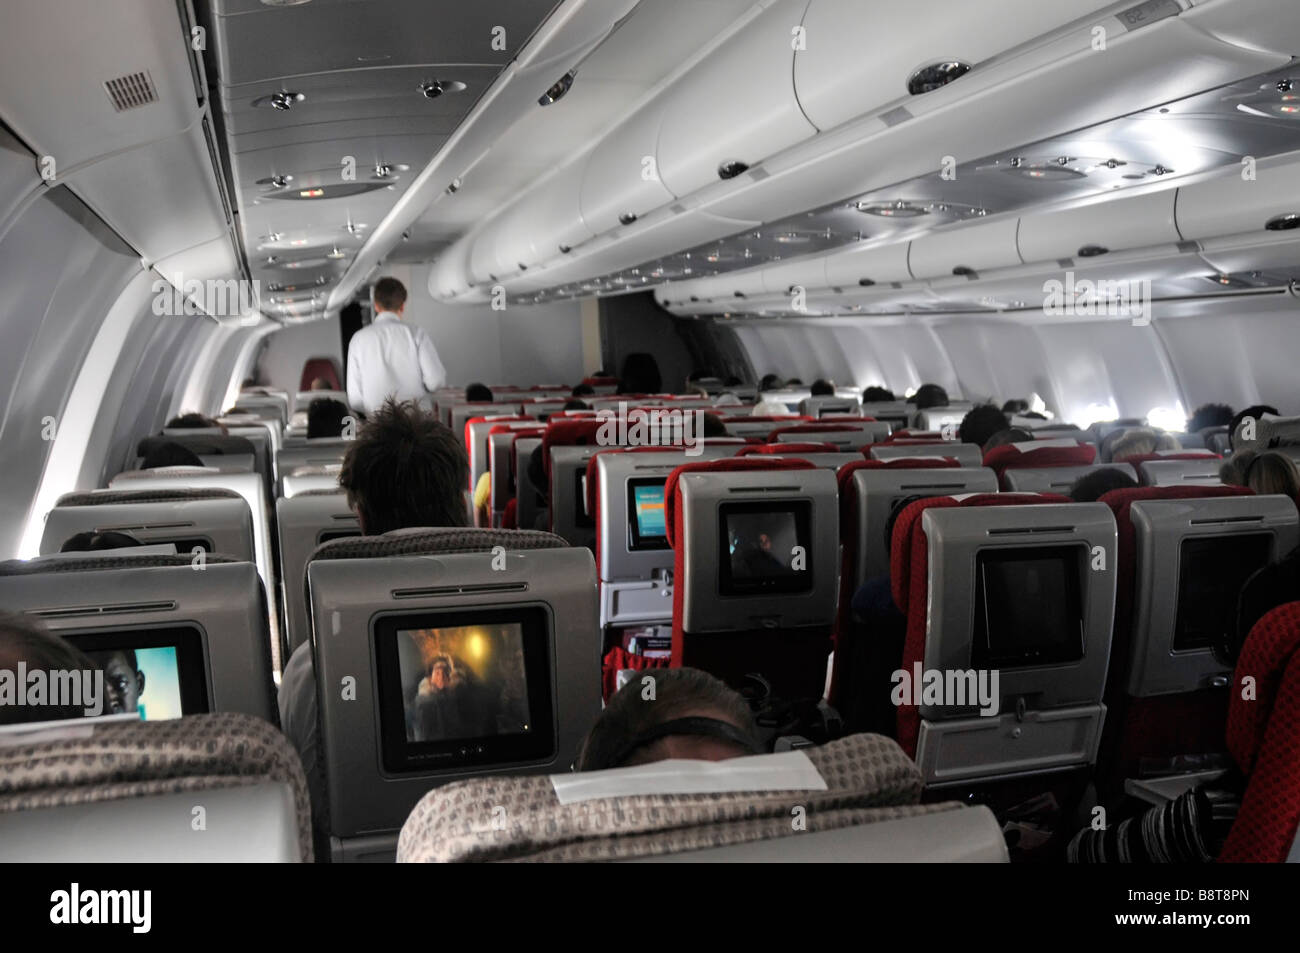 Voyage en avion intérieur Virgin Atlantic Airbus avion avion cabine passagers à bord de l'écran de cinéma de divertissement de télévision à l'arrière des sièges Banque D'Images